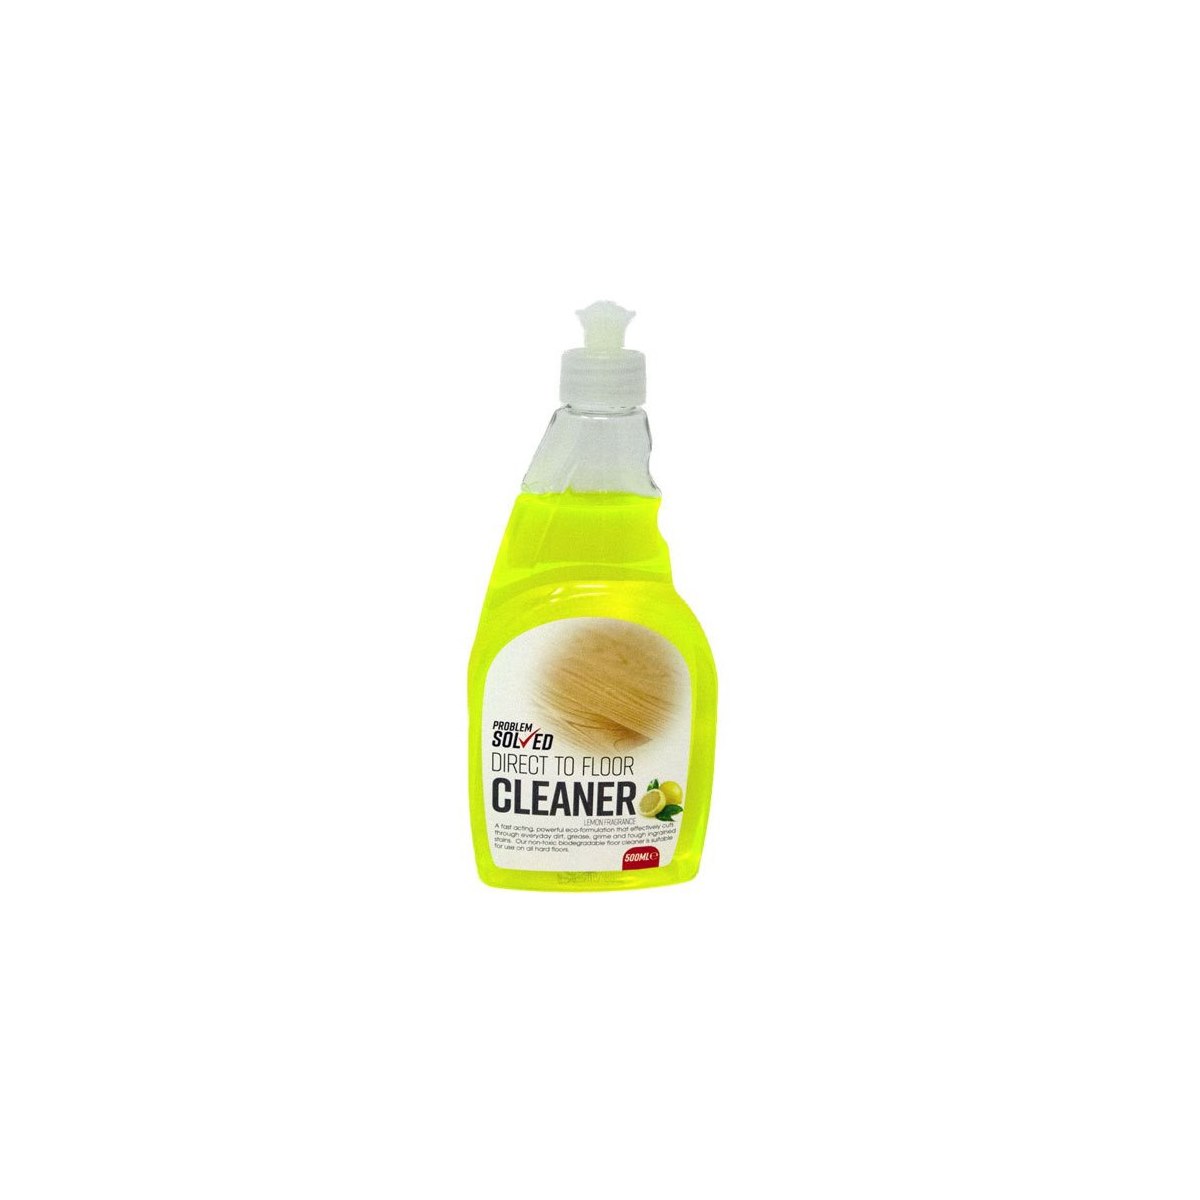 Problem Solved Direct To Floor Cleaner Lemon 500ml